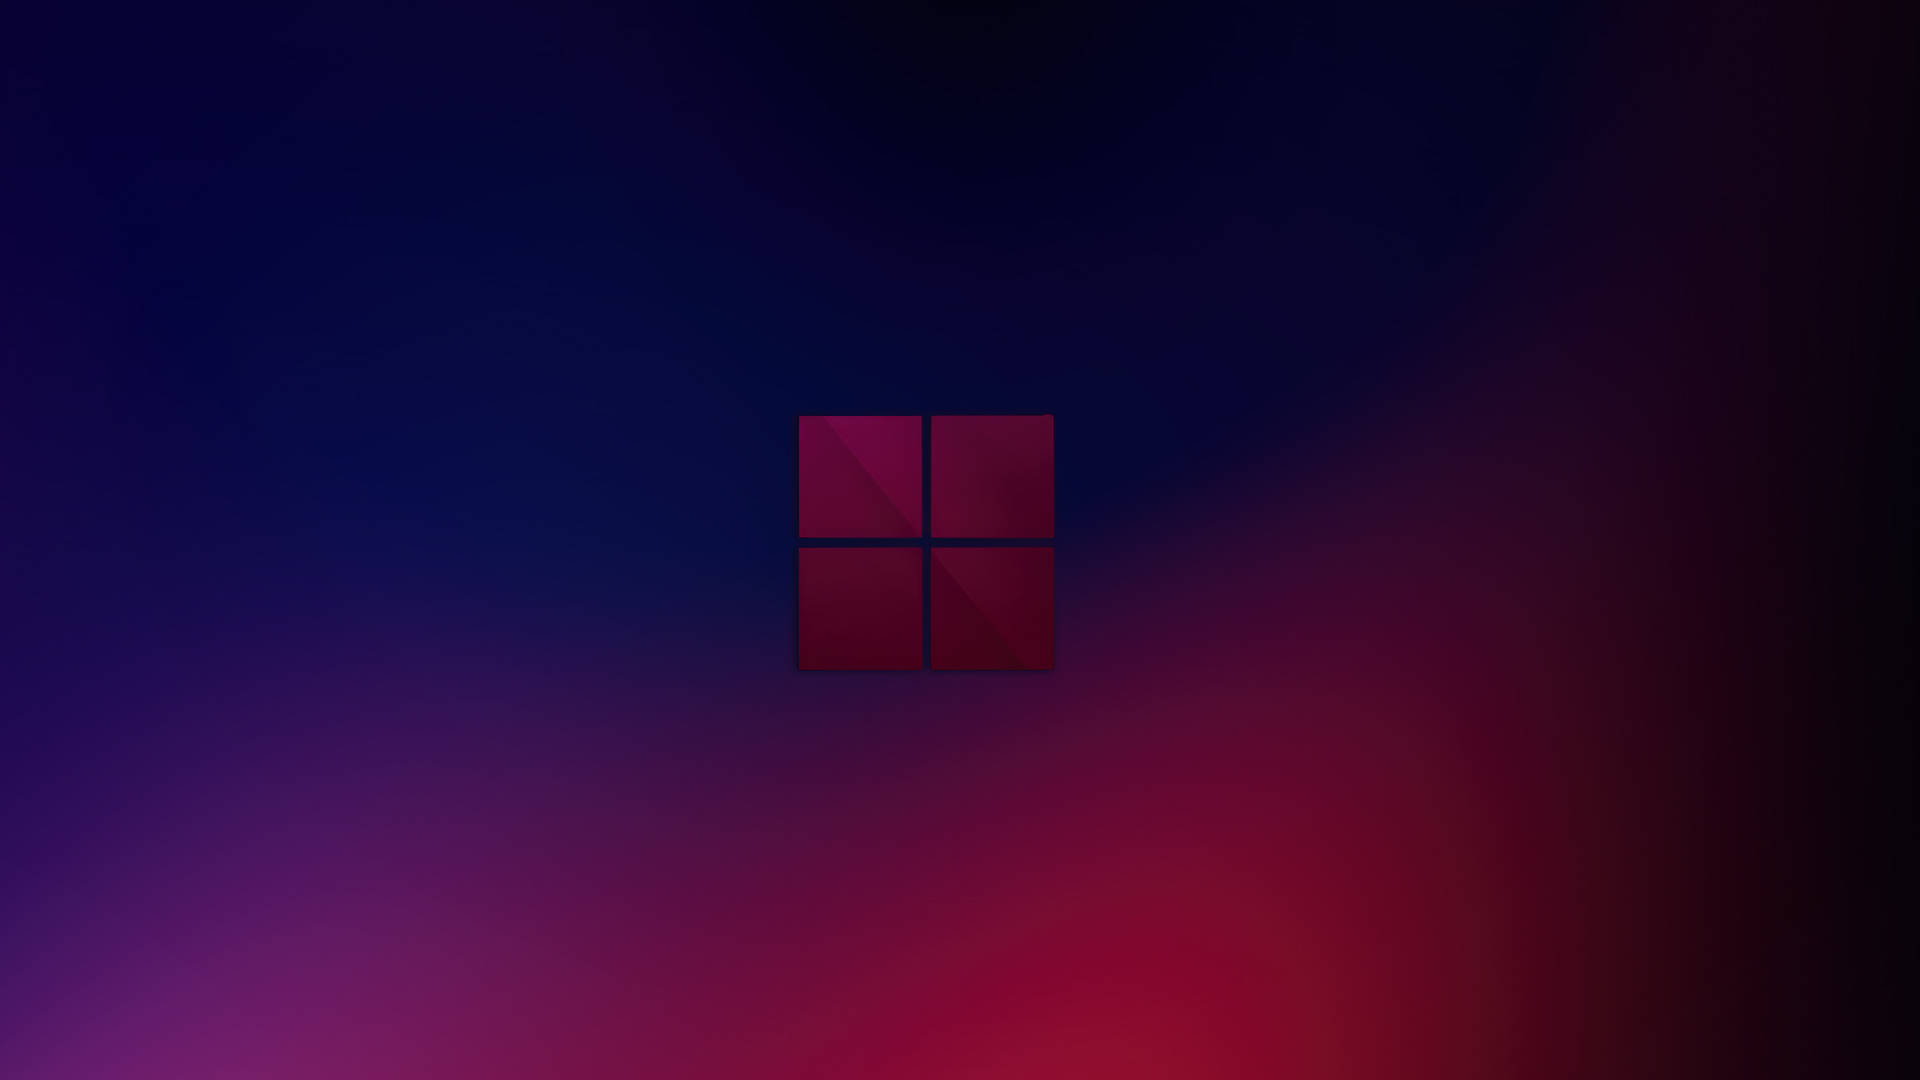 Windows 11 Blue Abstract Dark Mode 4K Wallpaper